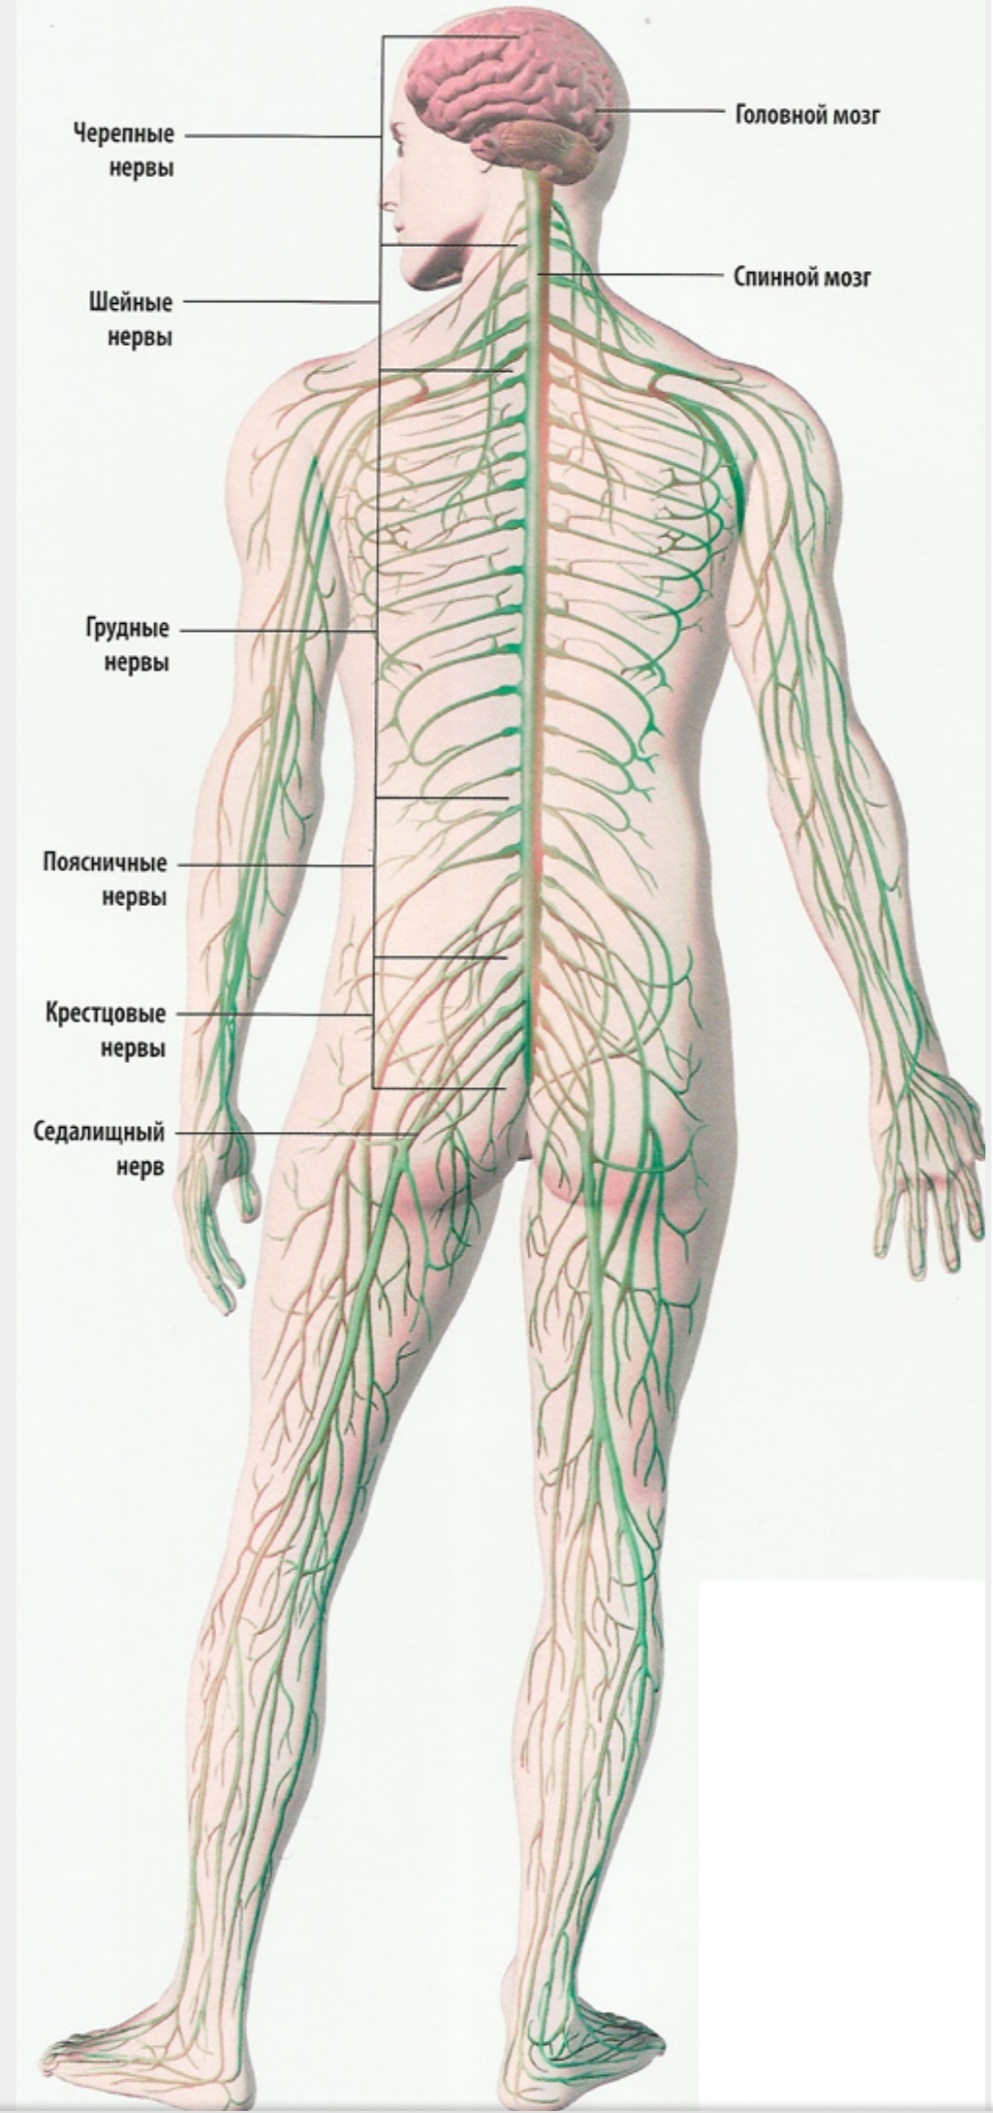 Лимфоузлы на пояснице. Спинномозговые нервы анатомия человека. Строение нервной системы спинной мозг.